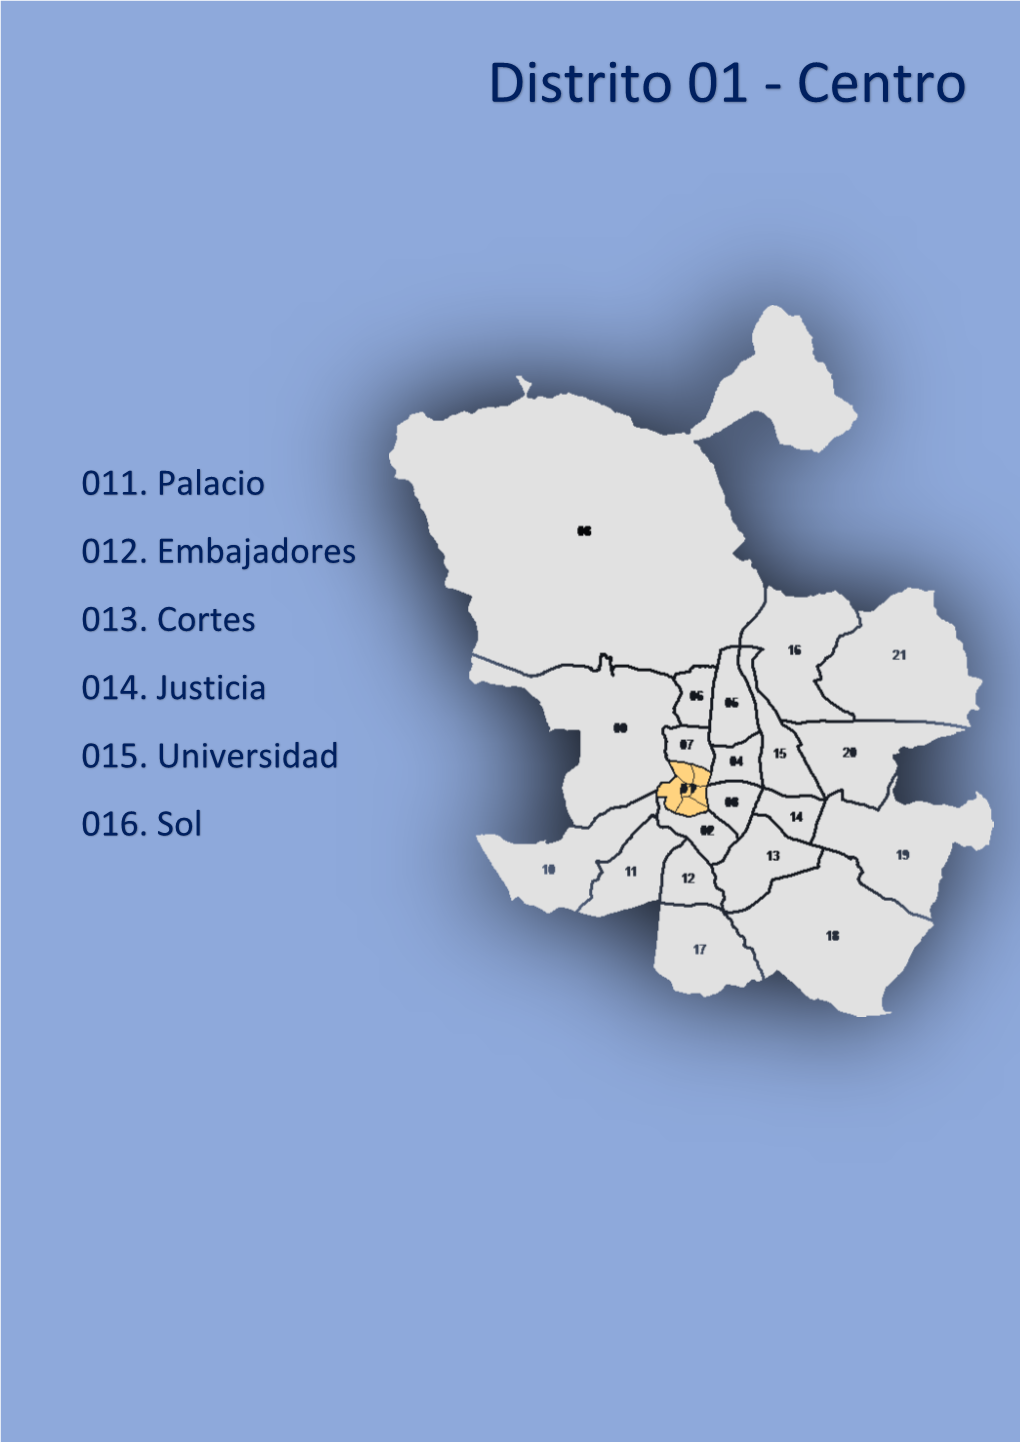 Distrito 01 - Centro